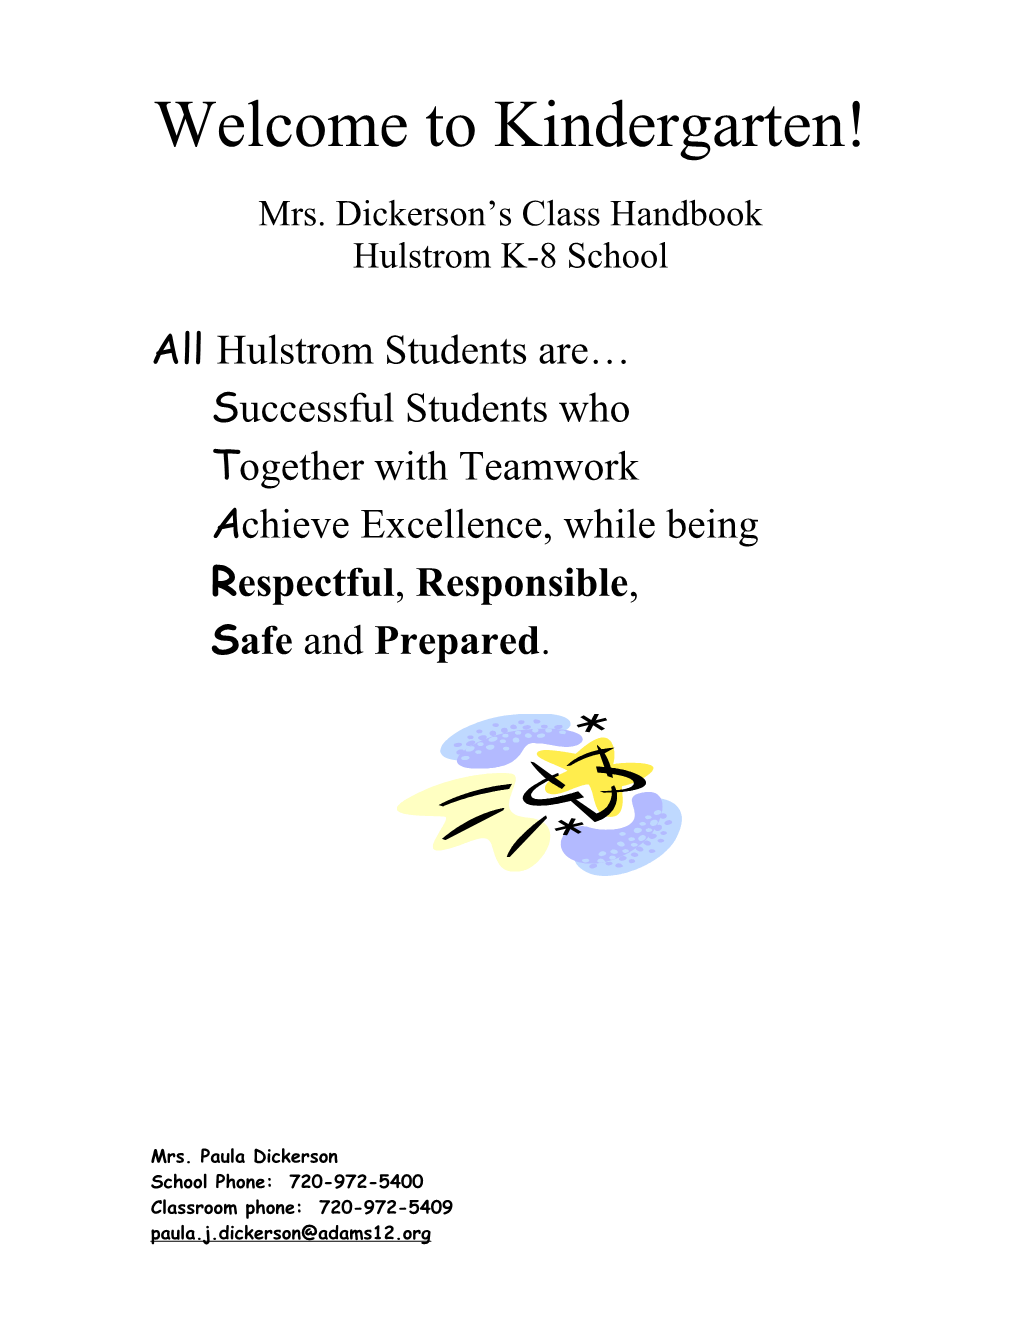 Mrs. Dickerson S Class Handbook